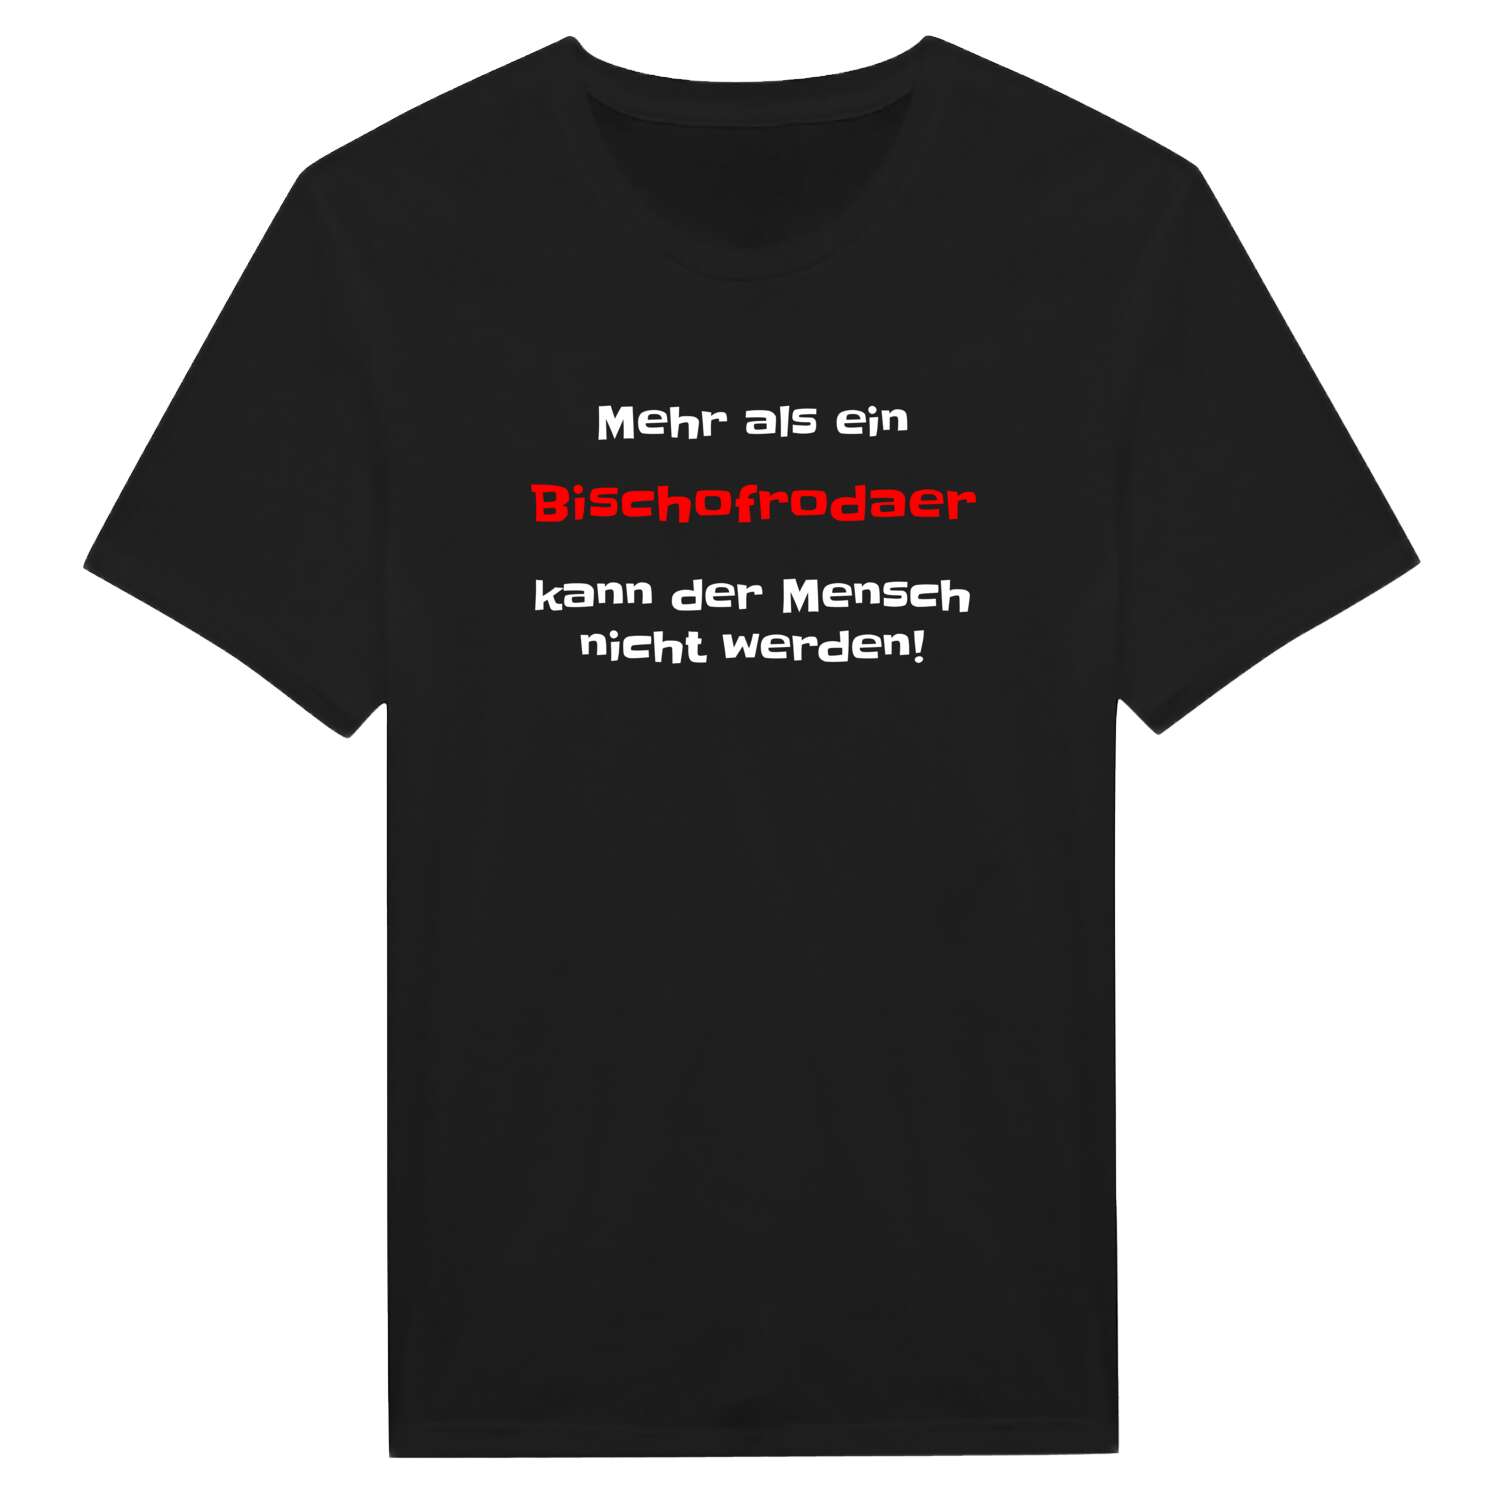 Bischofroda T-Shirt »Mehr als ein«